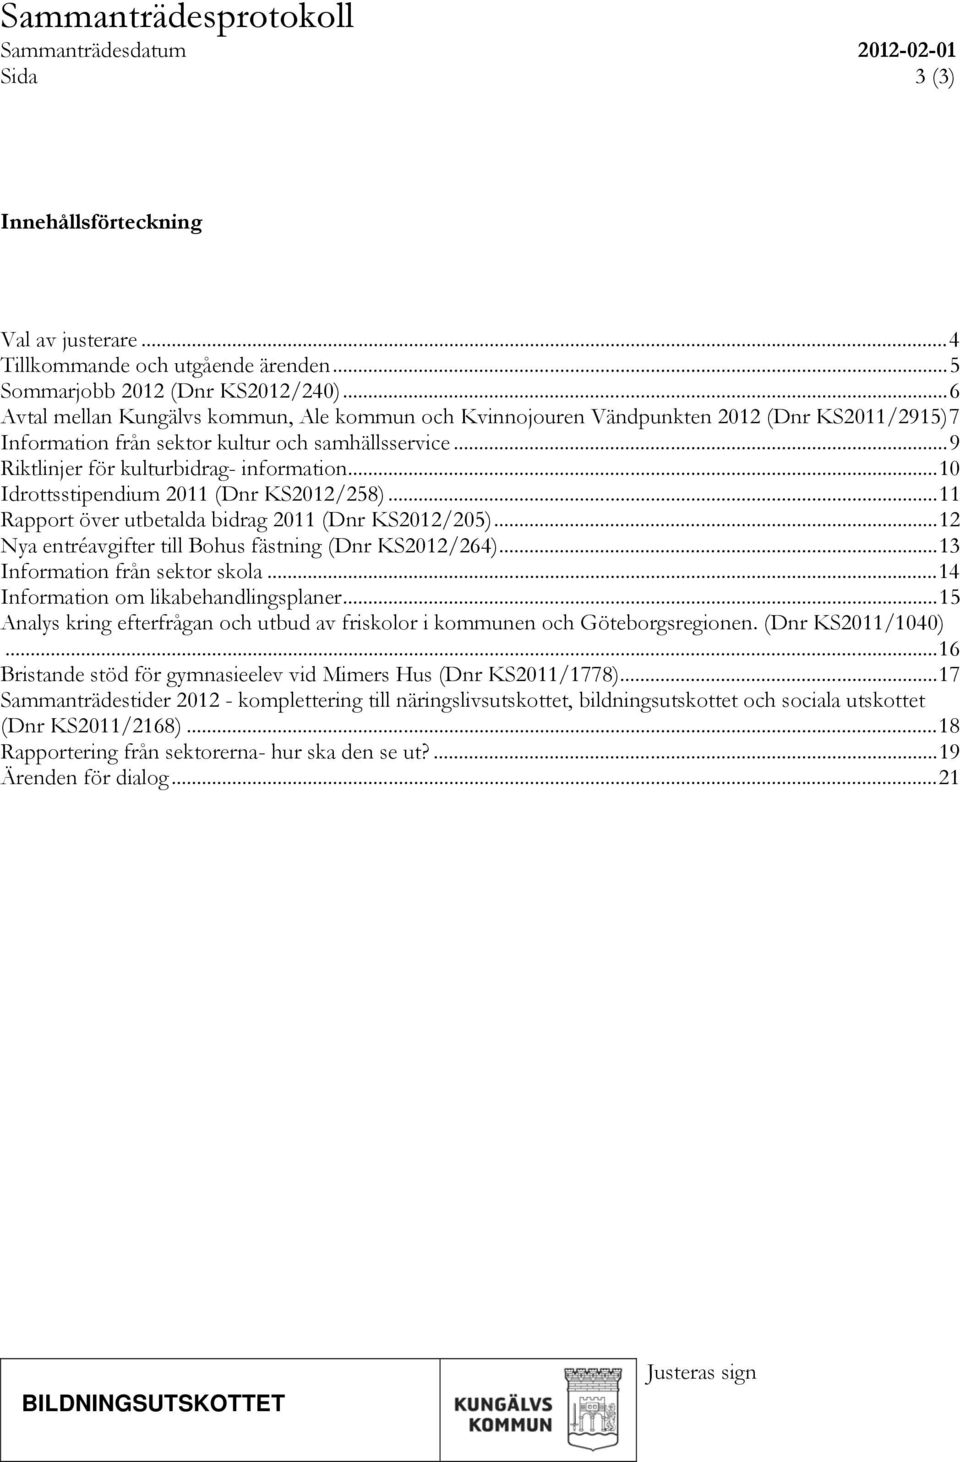 .. 10 Idrottsstipendium 2011 (Dnr KS2012/258)... 11 Rapport över utbetalda bidrag 2011 (Dnr KS2012/205)... 12 Nya entréavgifter till Bohus fästning (Dnr KS2012/264)... 13 Information från sektor skola.